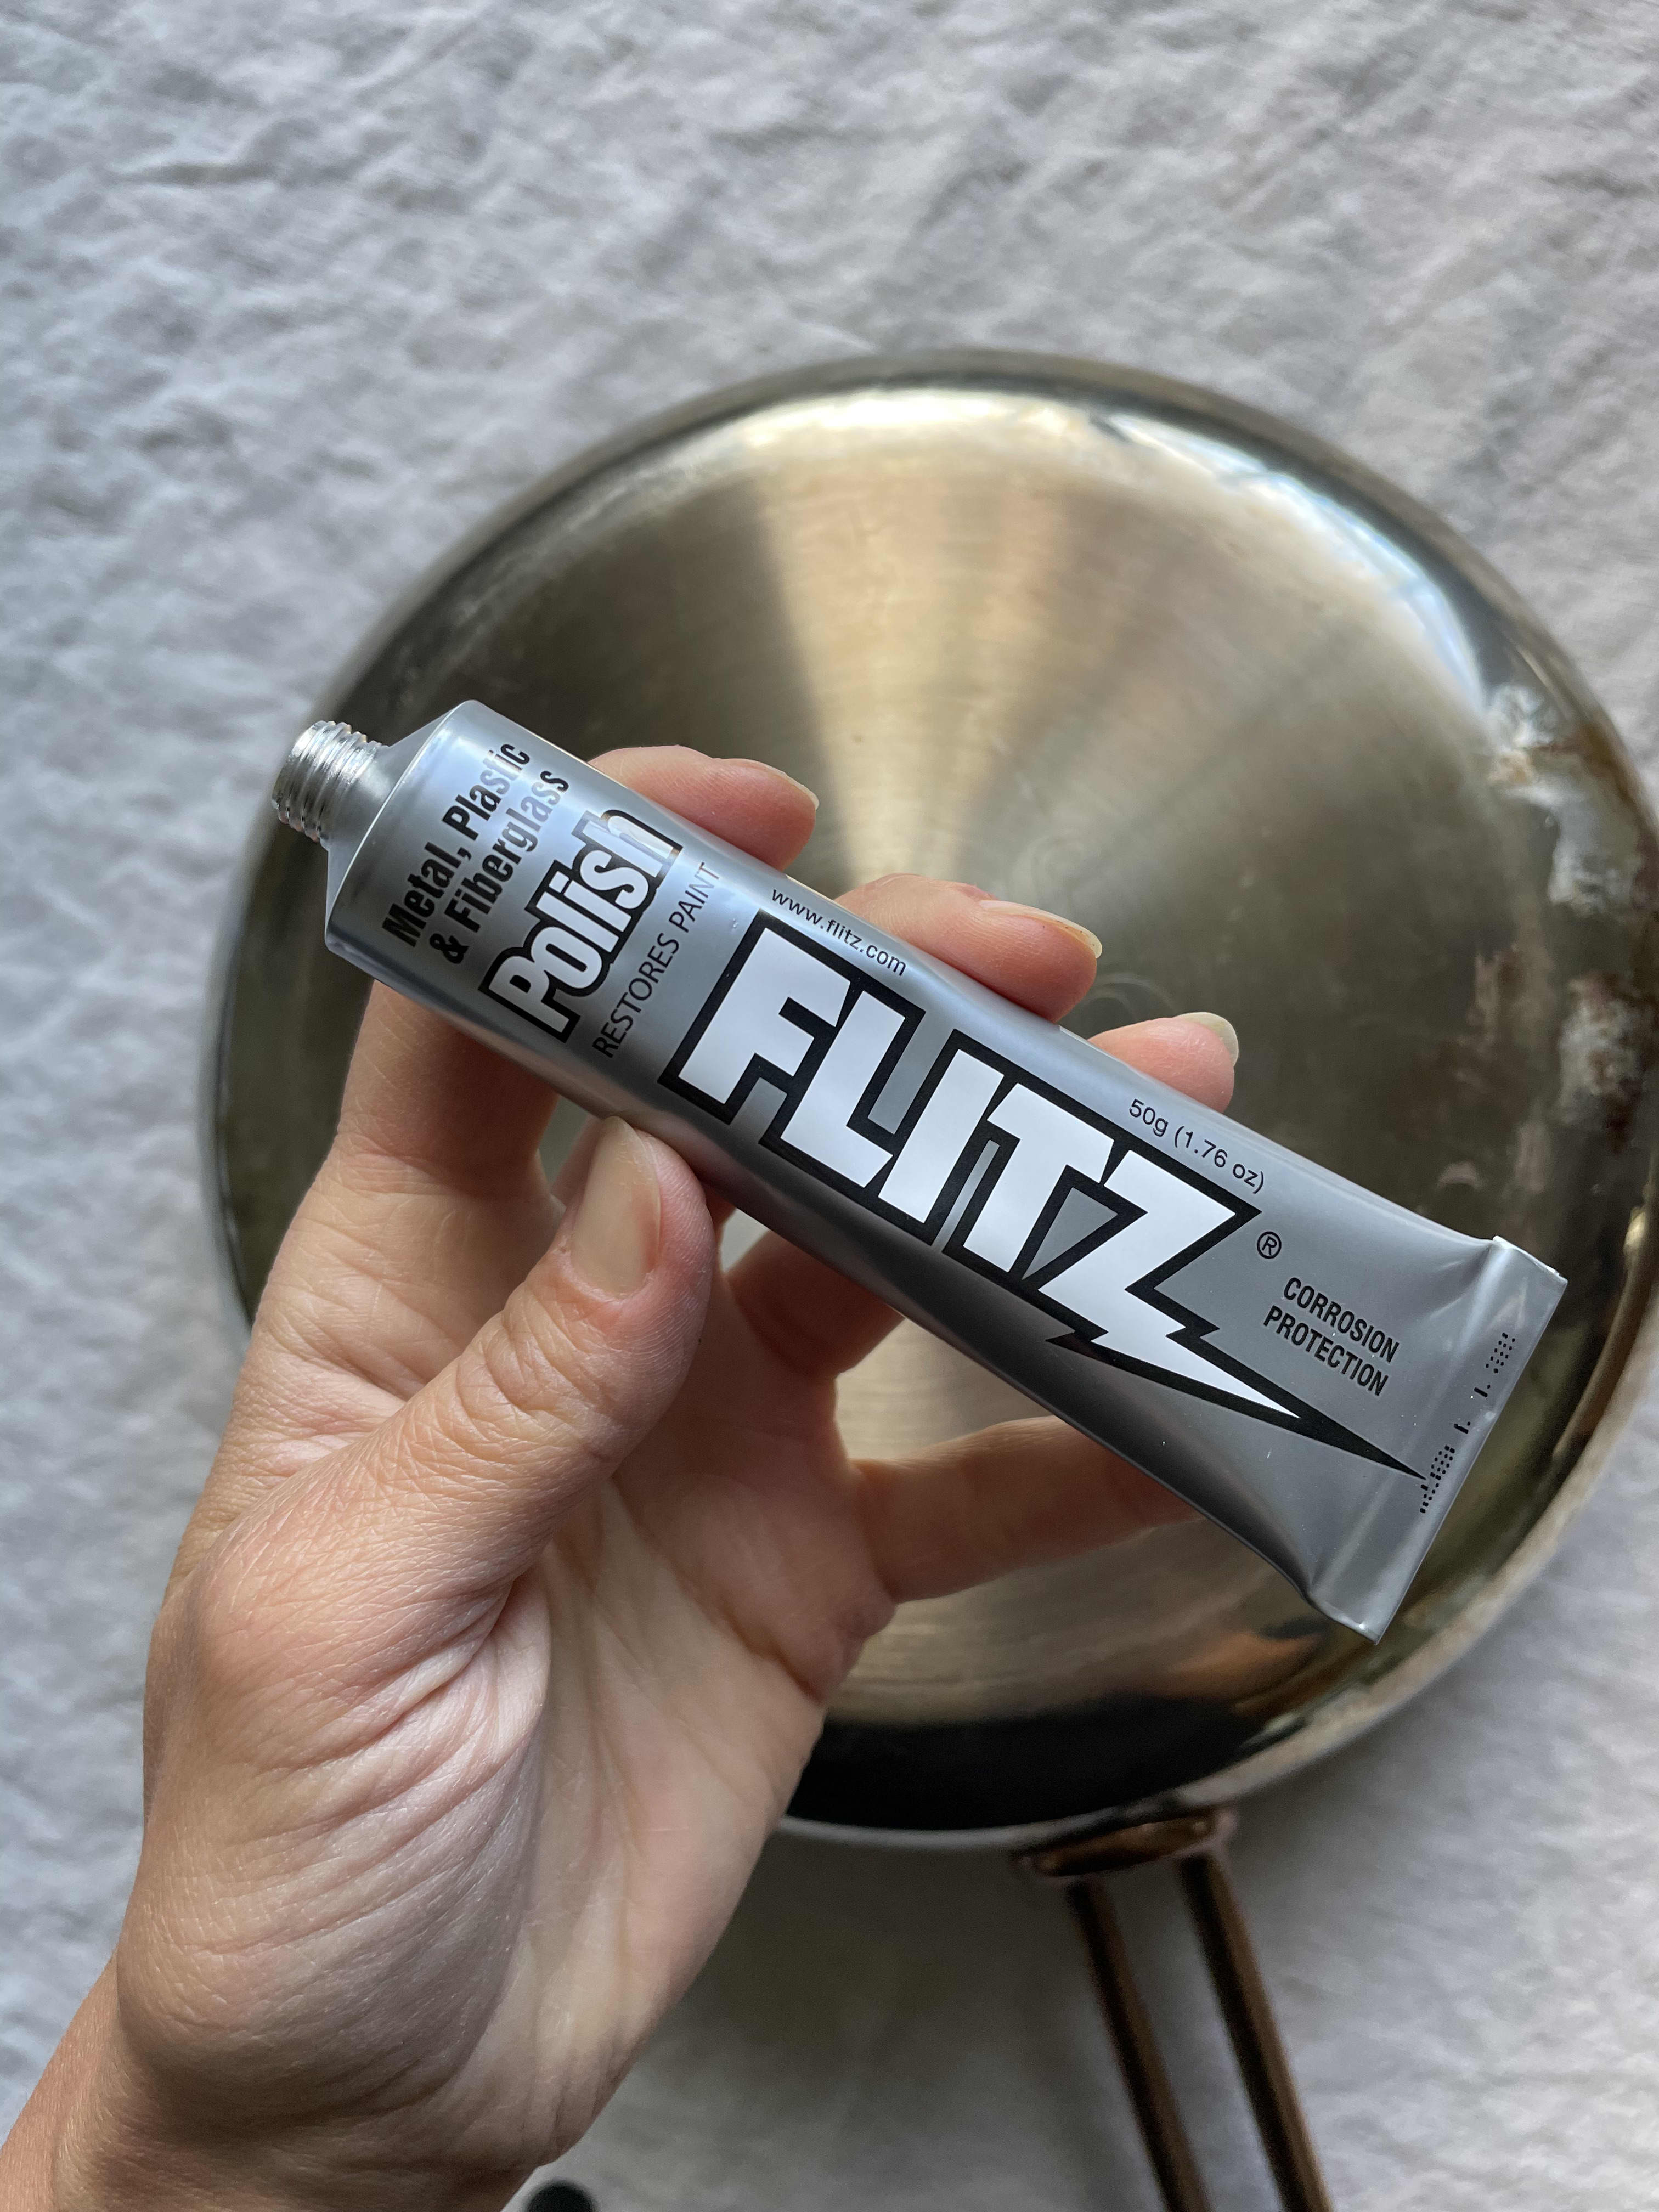 Flitz Stainless & Chrome Cleaner